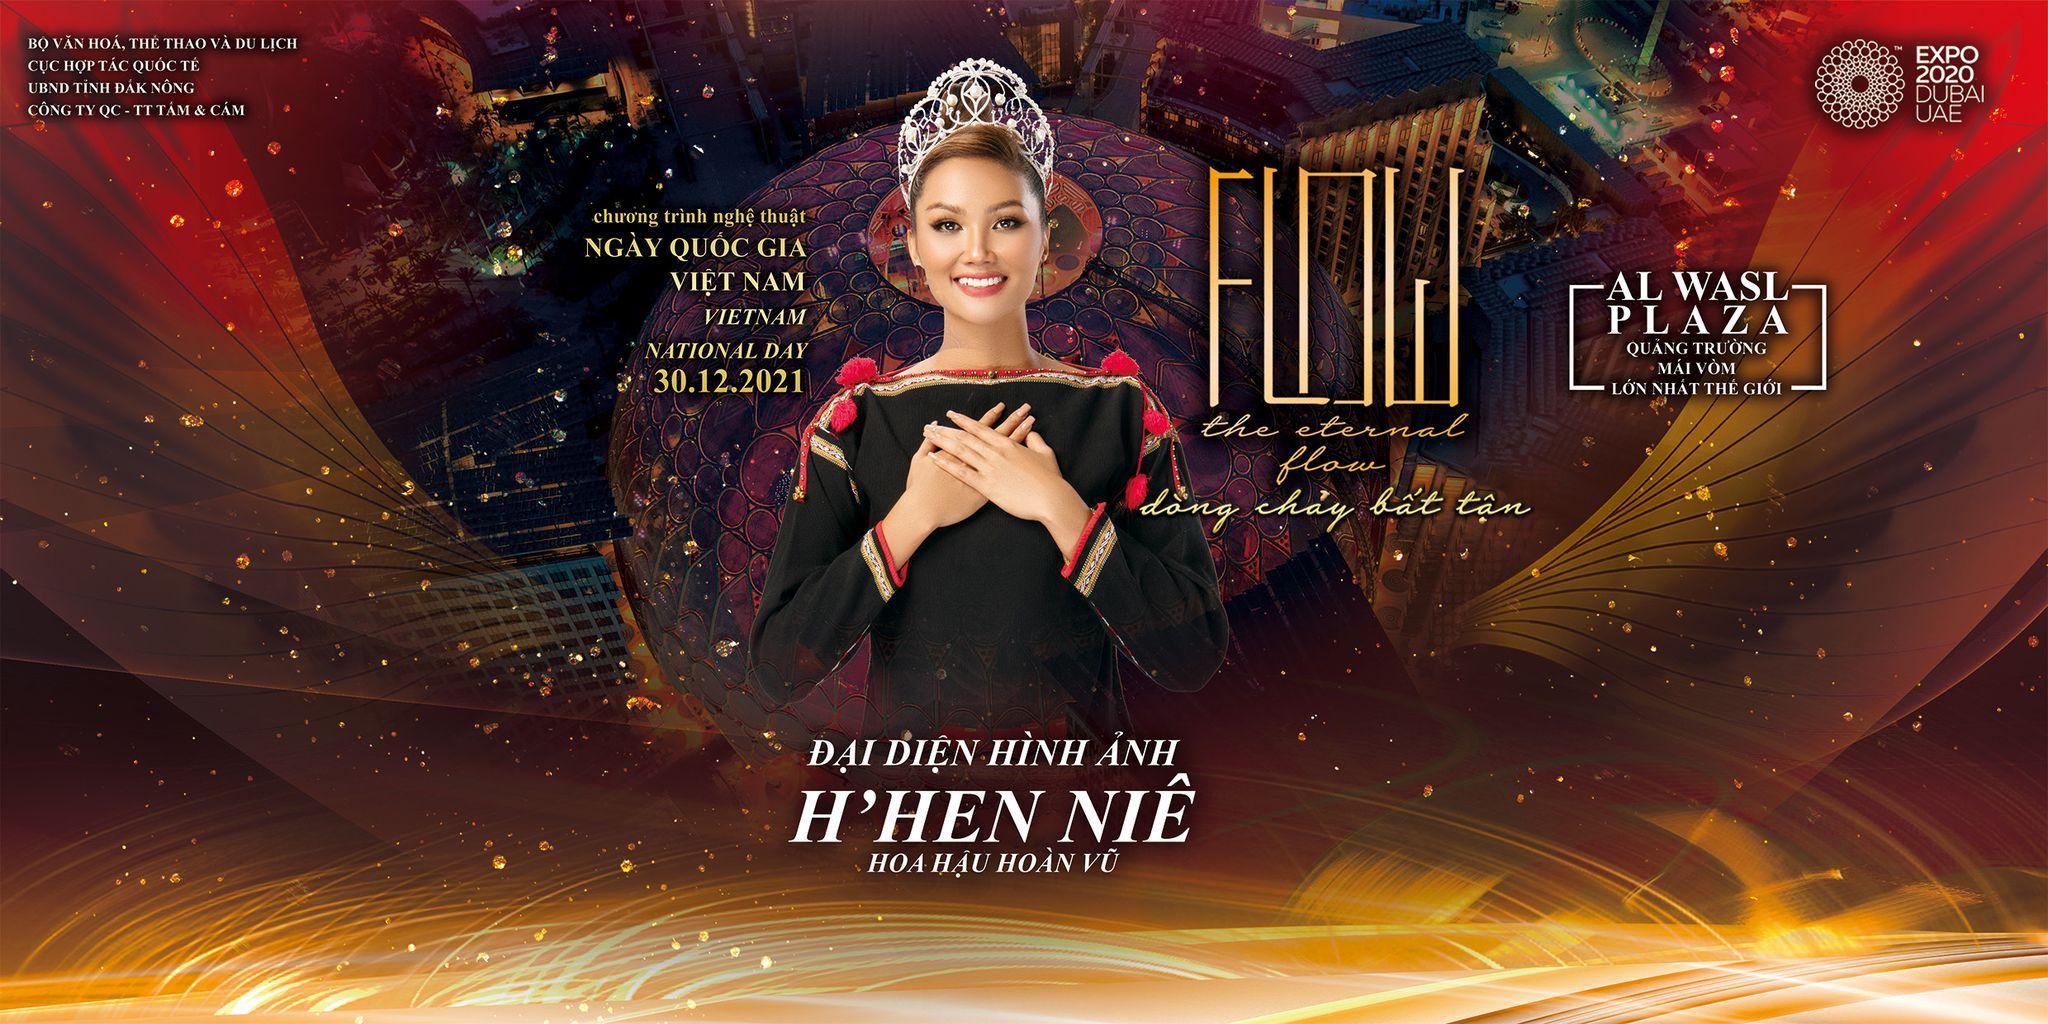 Hoa hậu H’Hen Niê làm đại diện hình ảnh trong "Ngày Quốc gia Việt Nam" ở Dubai - 1